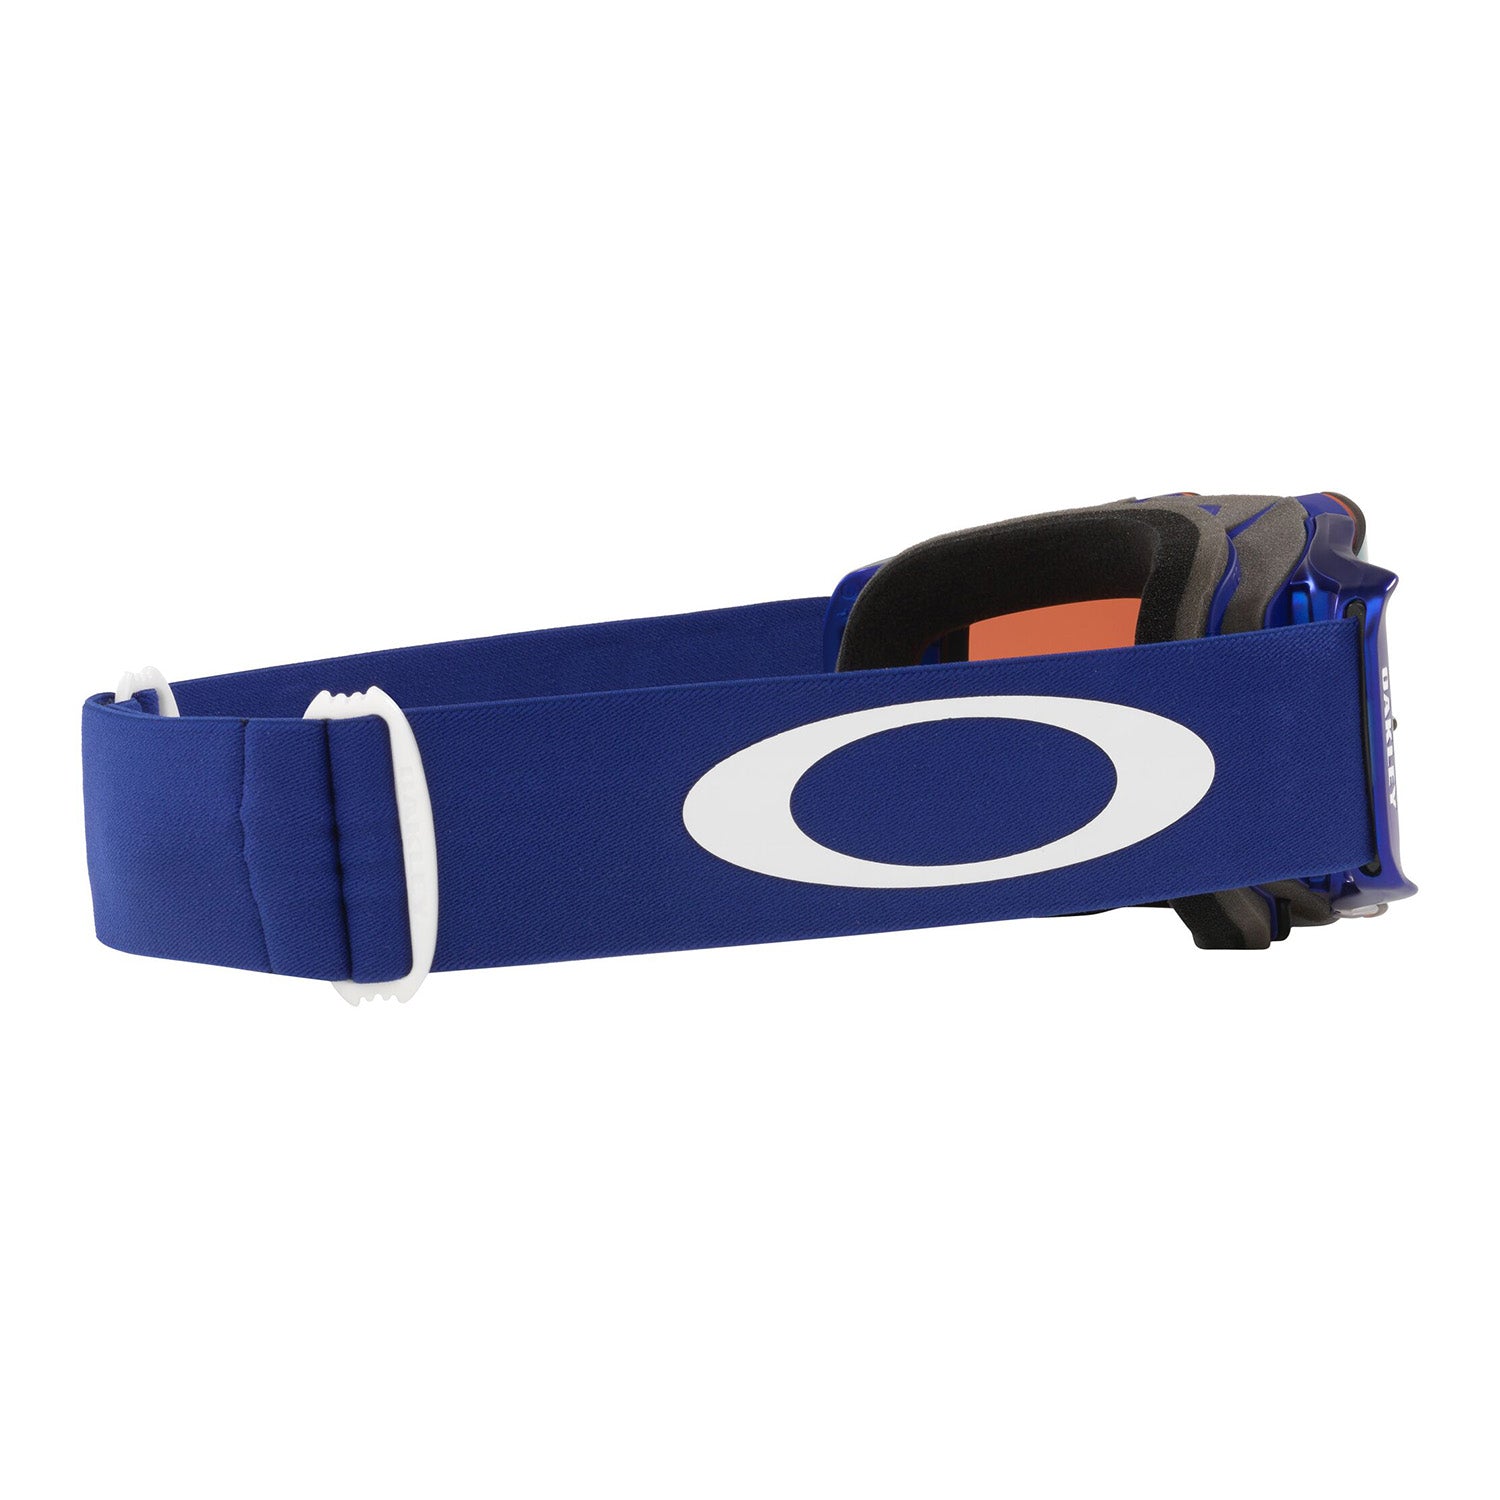 Oakley Front Line MX Goggle Moto Blue - Prizm Sapphire Lens